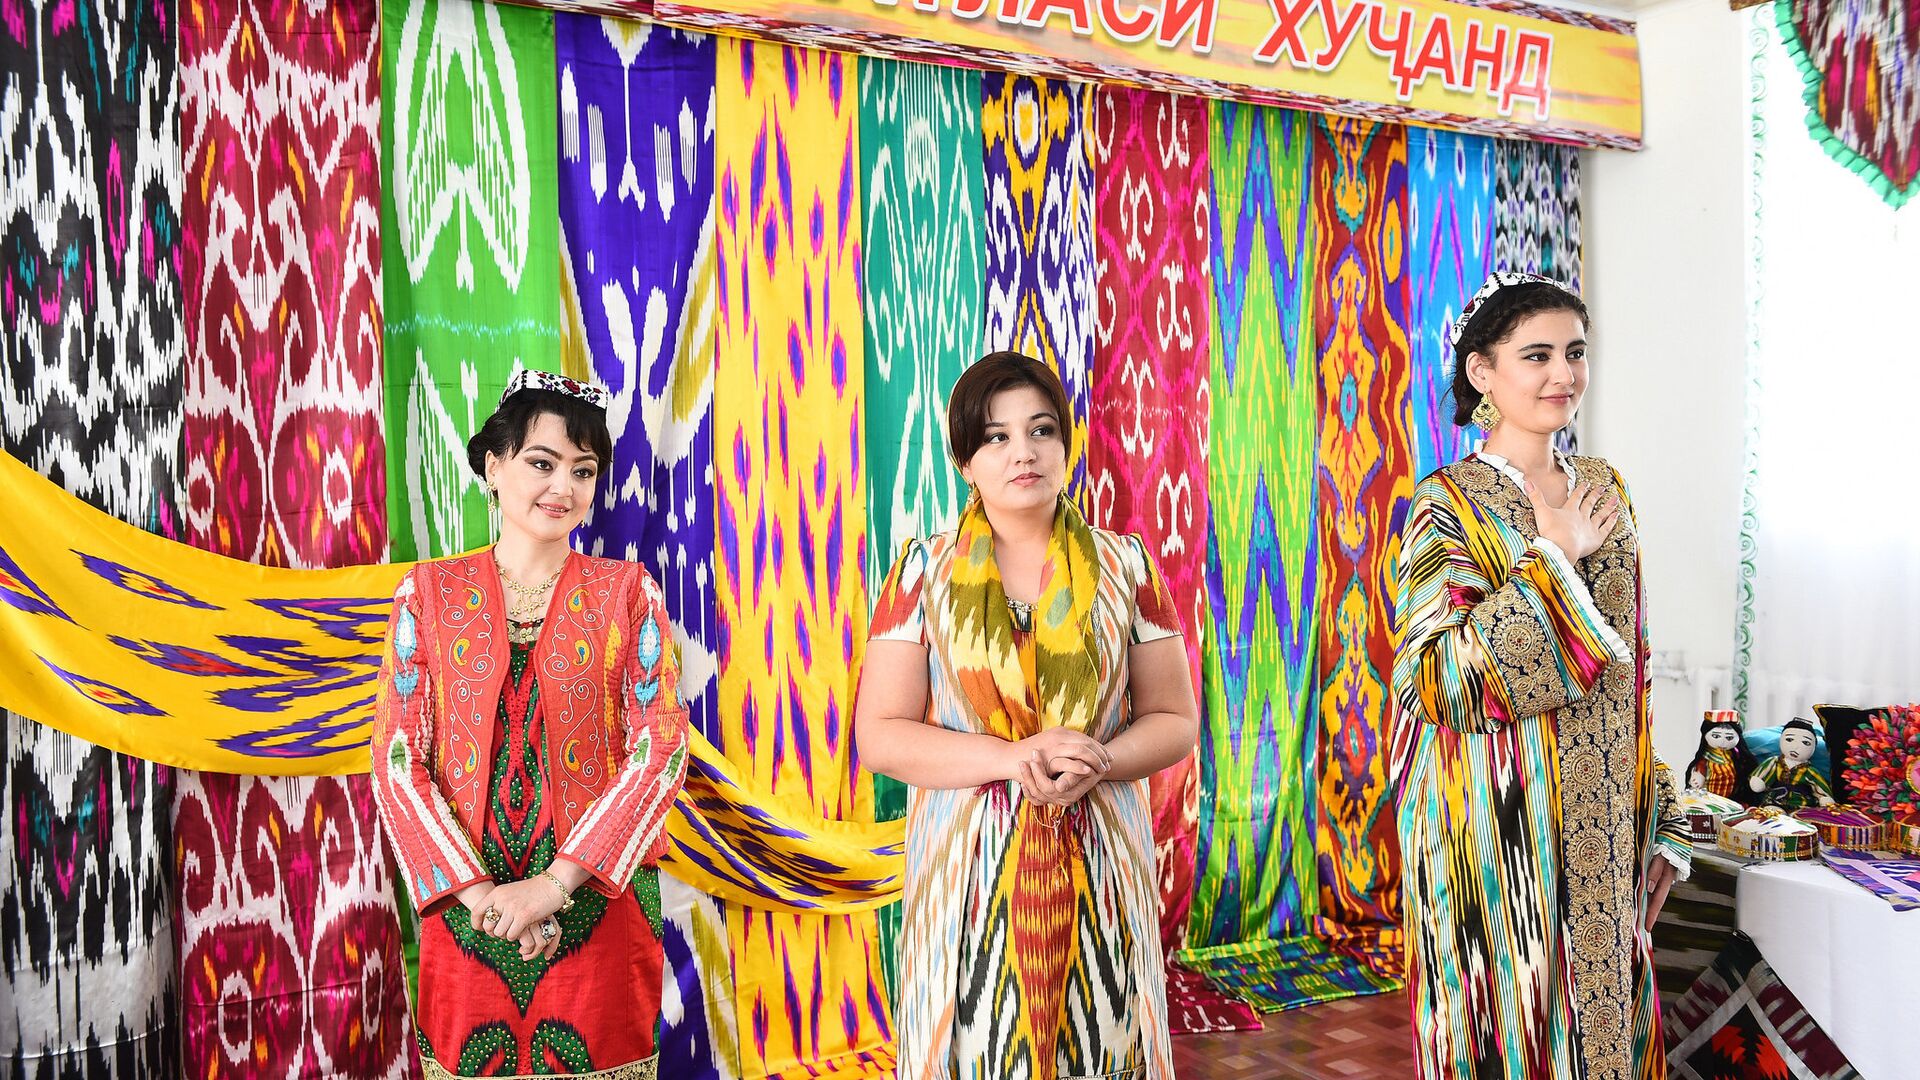 Таджикские женщины в одежде из атласа - Sputnik Таджикистан, 1920, 15.12.2021